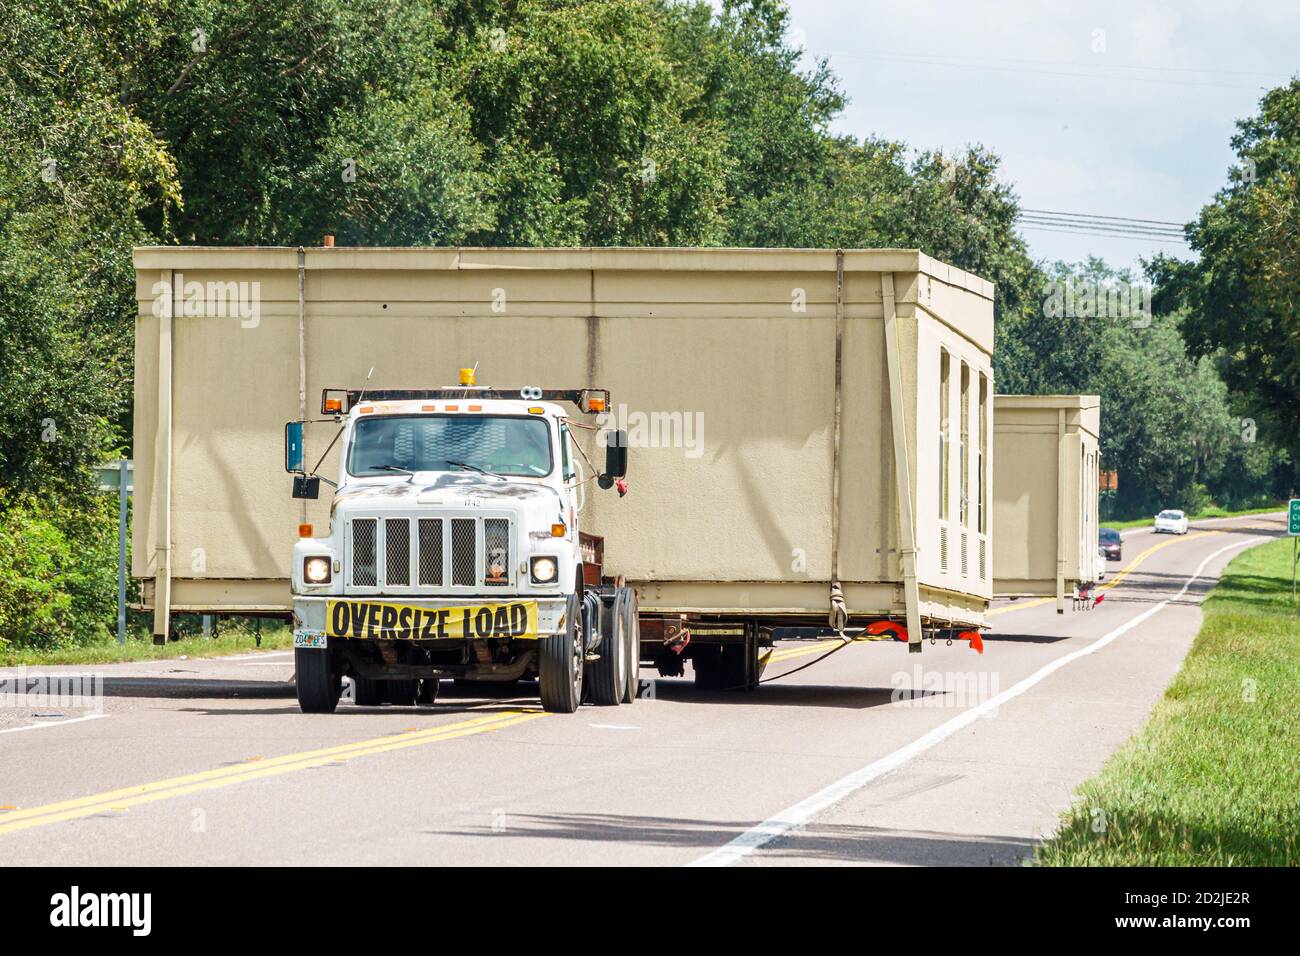 Florida,Mabel,state Road Route 50,strada a due corsie,oversize oversize oversize load,camion che trasportano case prefabbricate casa residenza, visitatore Foto Stock